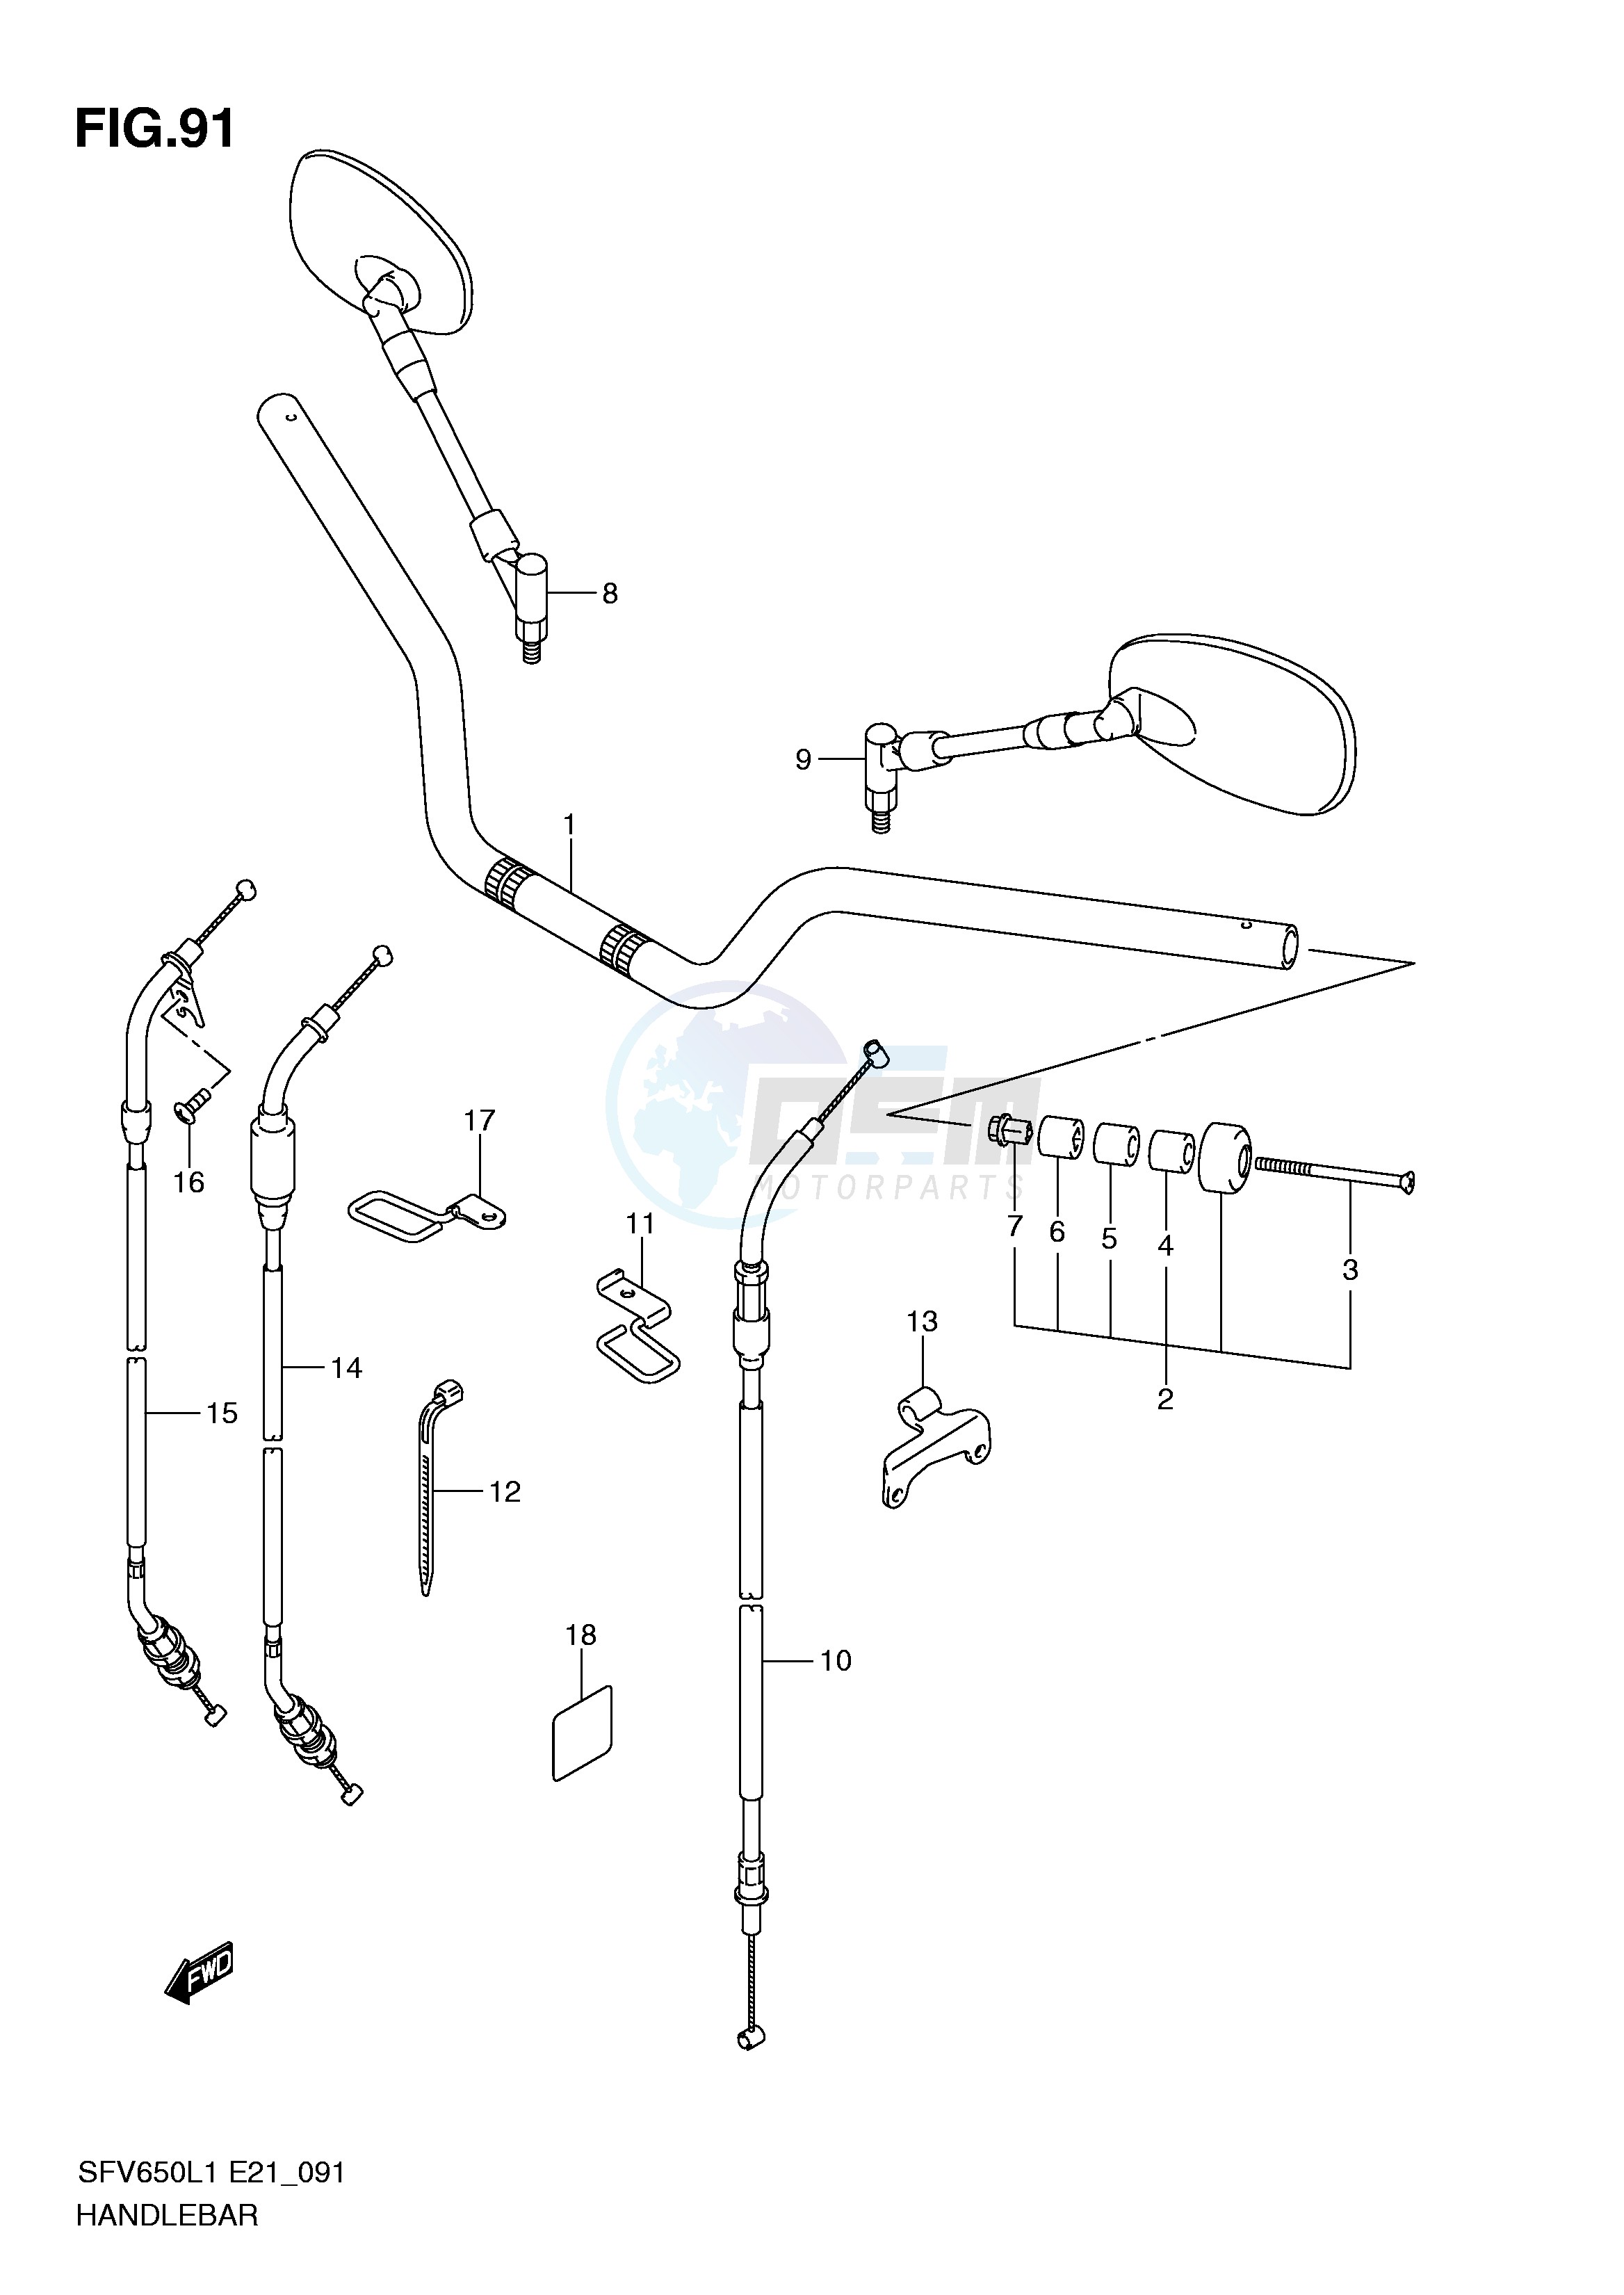 HANDLEBAR (SFV650AL1 E21) blueprint